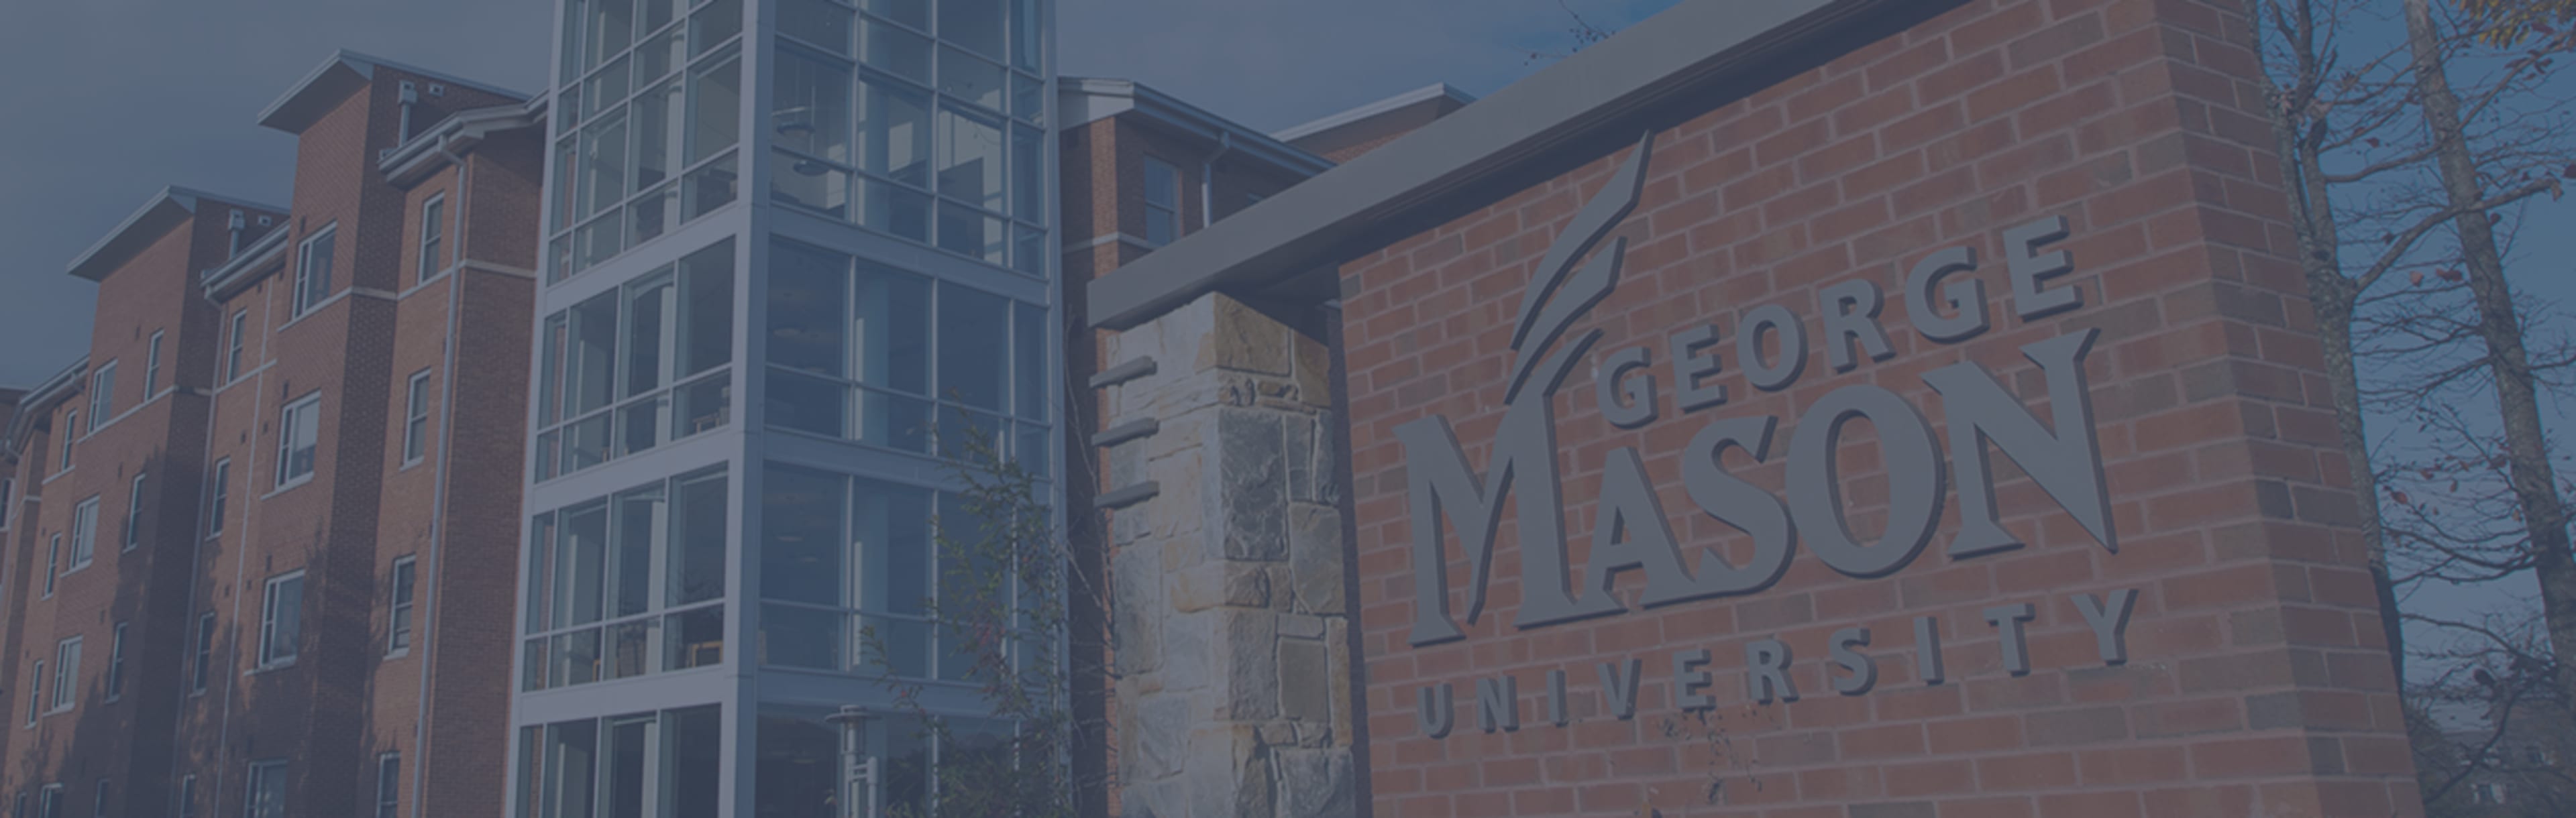 George Mason University Online Maestría en Ciencias en Ingeniería de Análisis de Datos